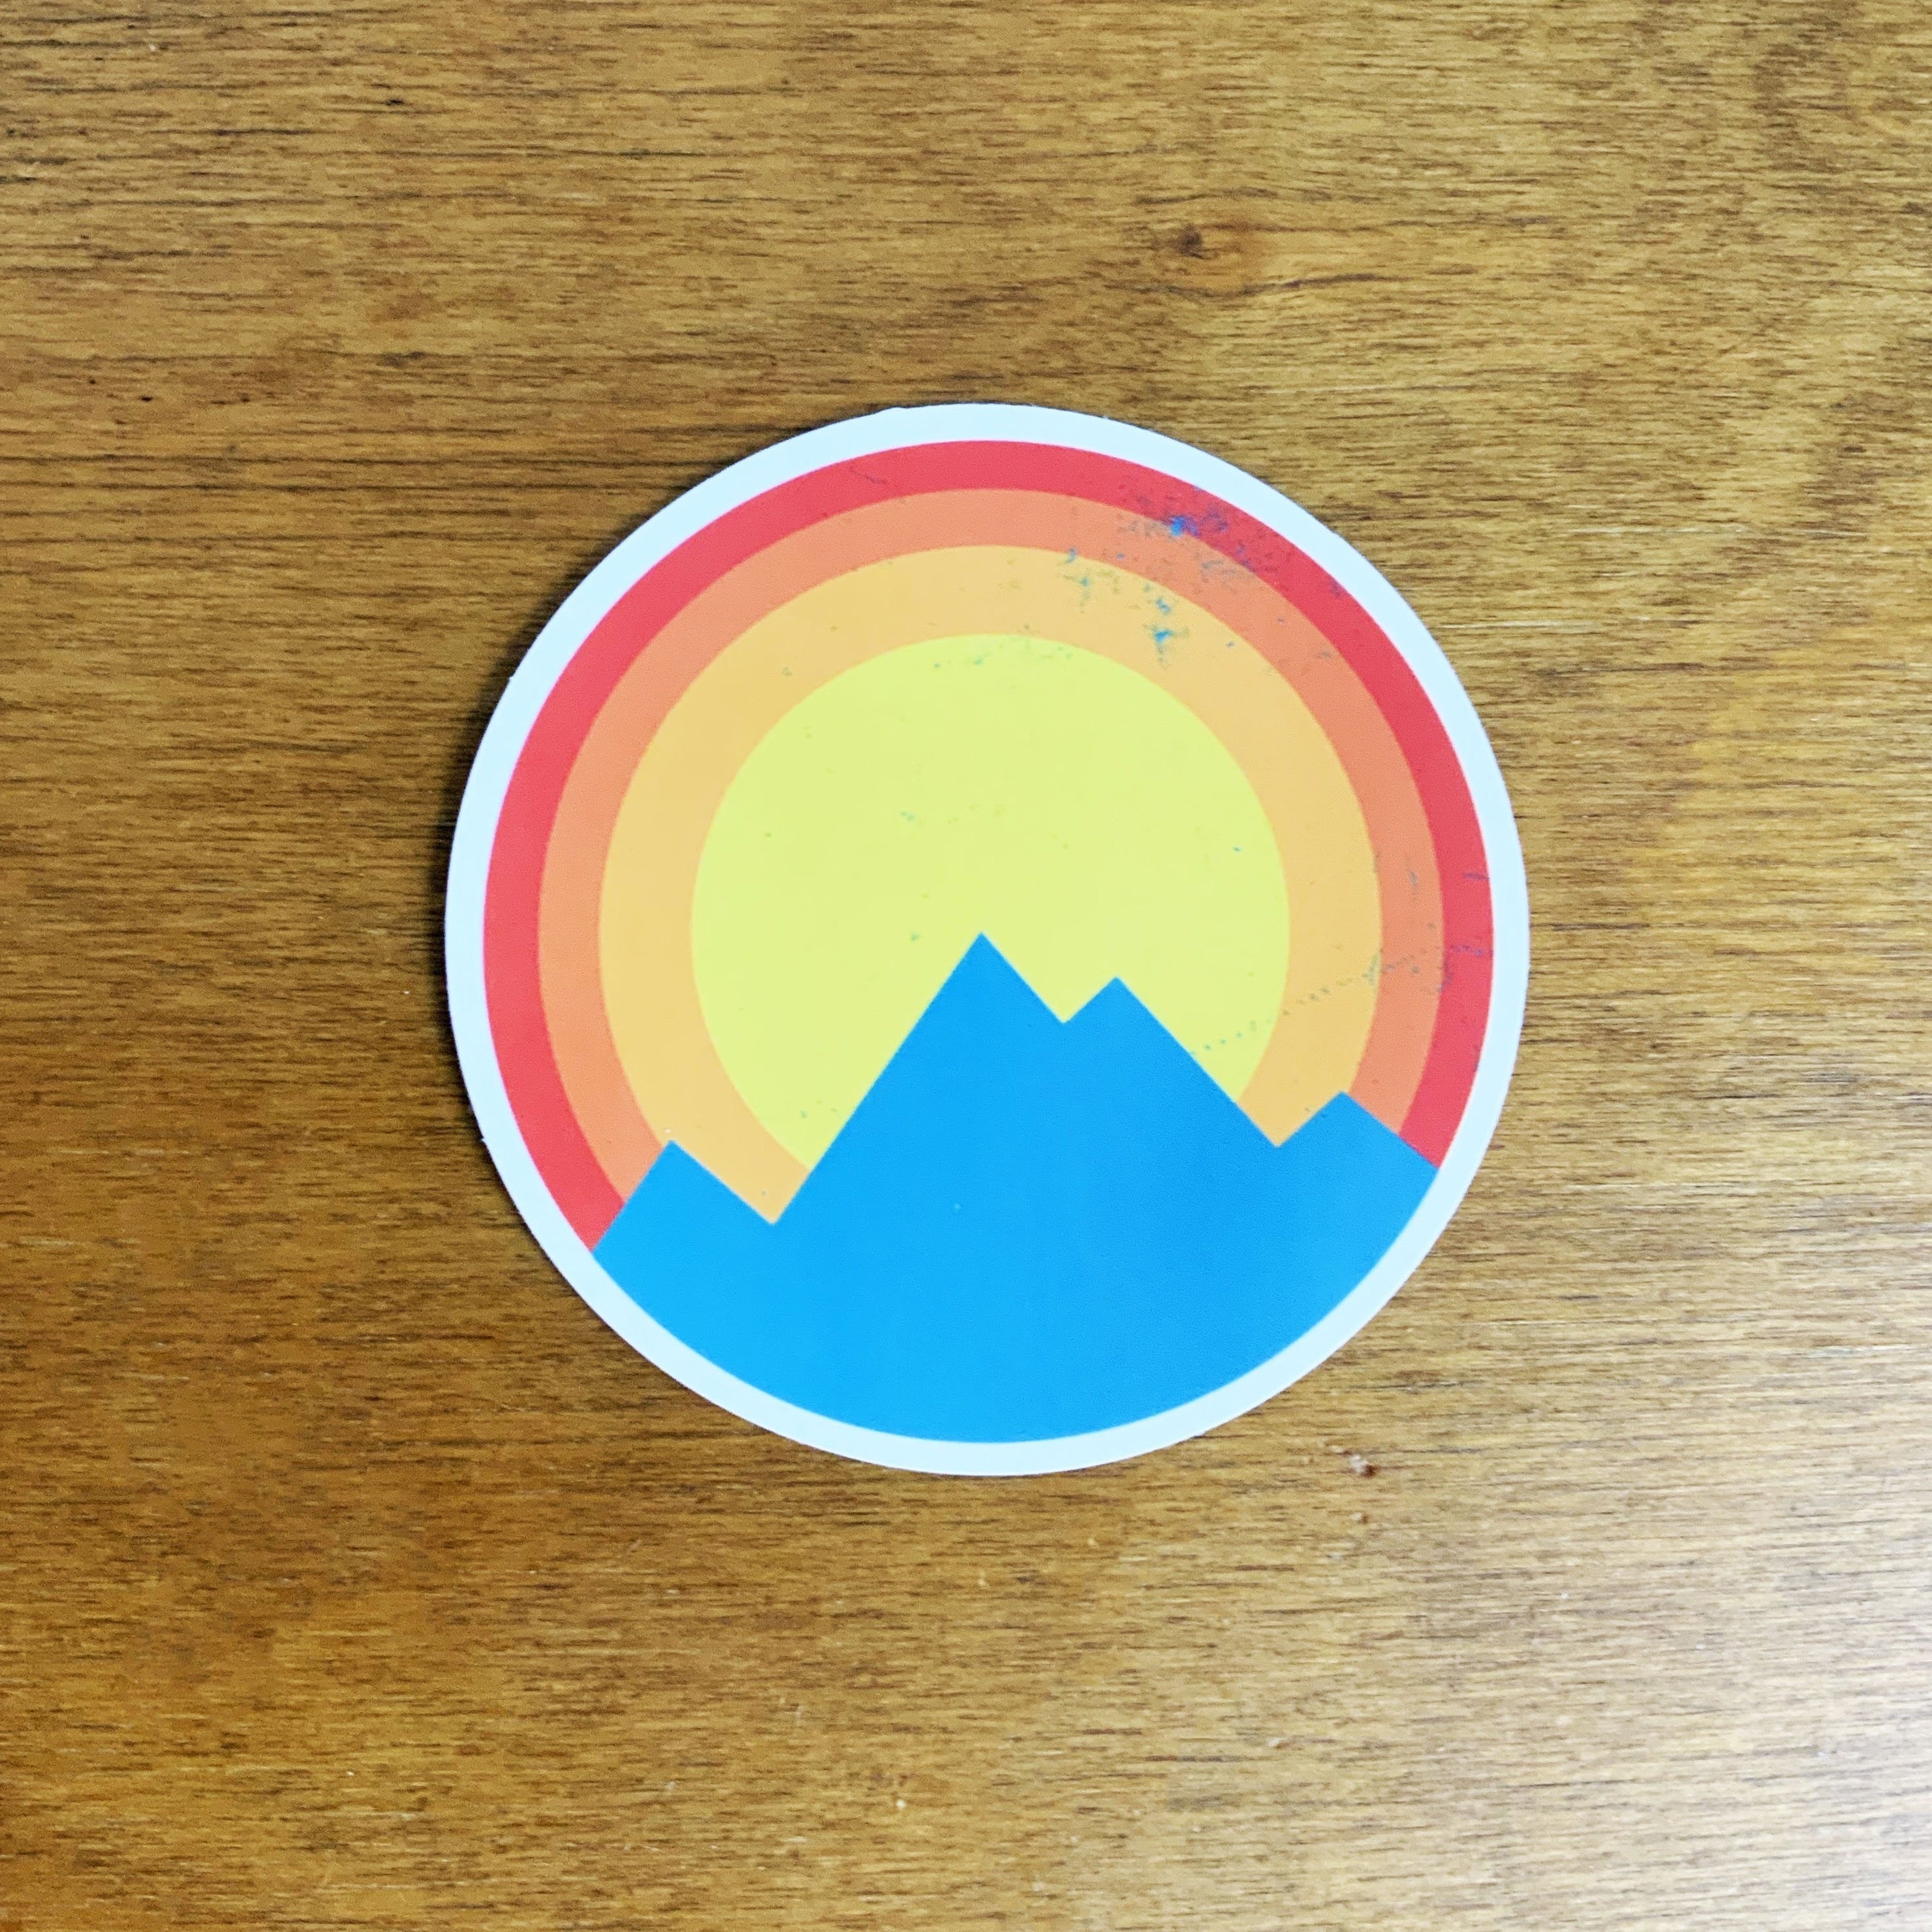 Blue Peak Sticker, sticker, Pacific Rayne, Defiance Outdoor Gear Co.